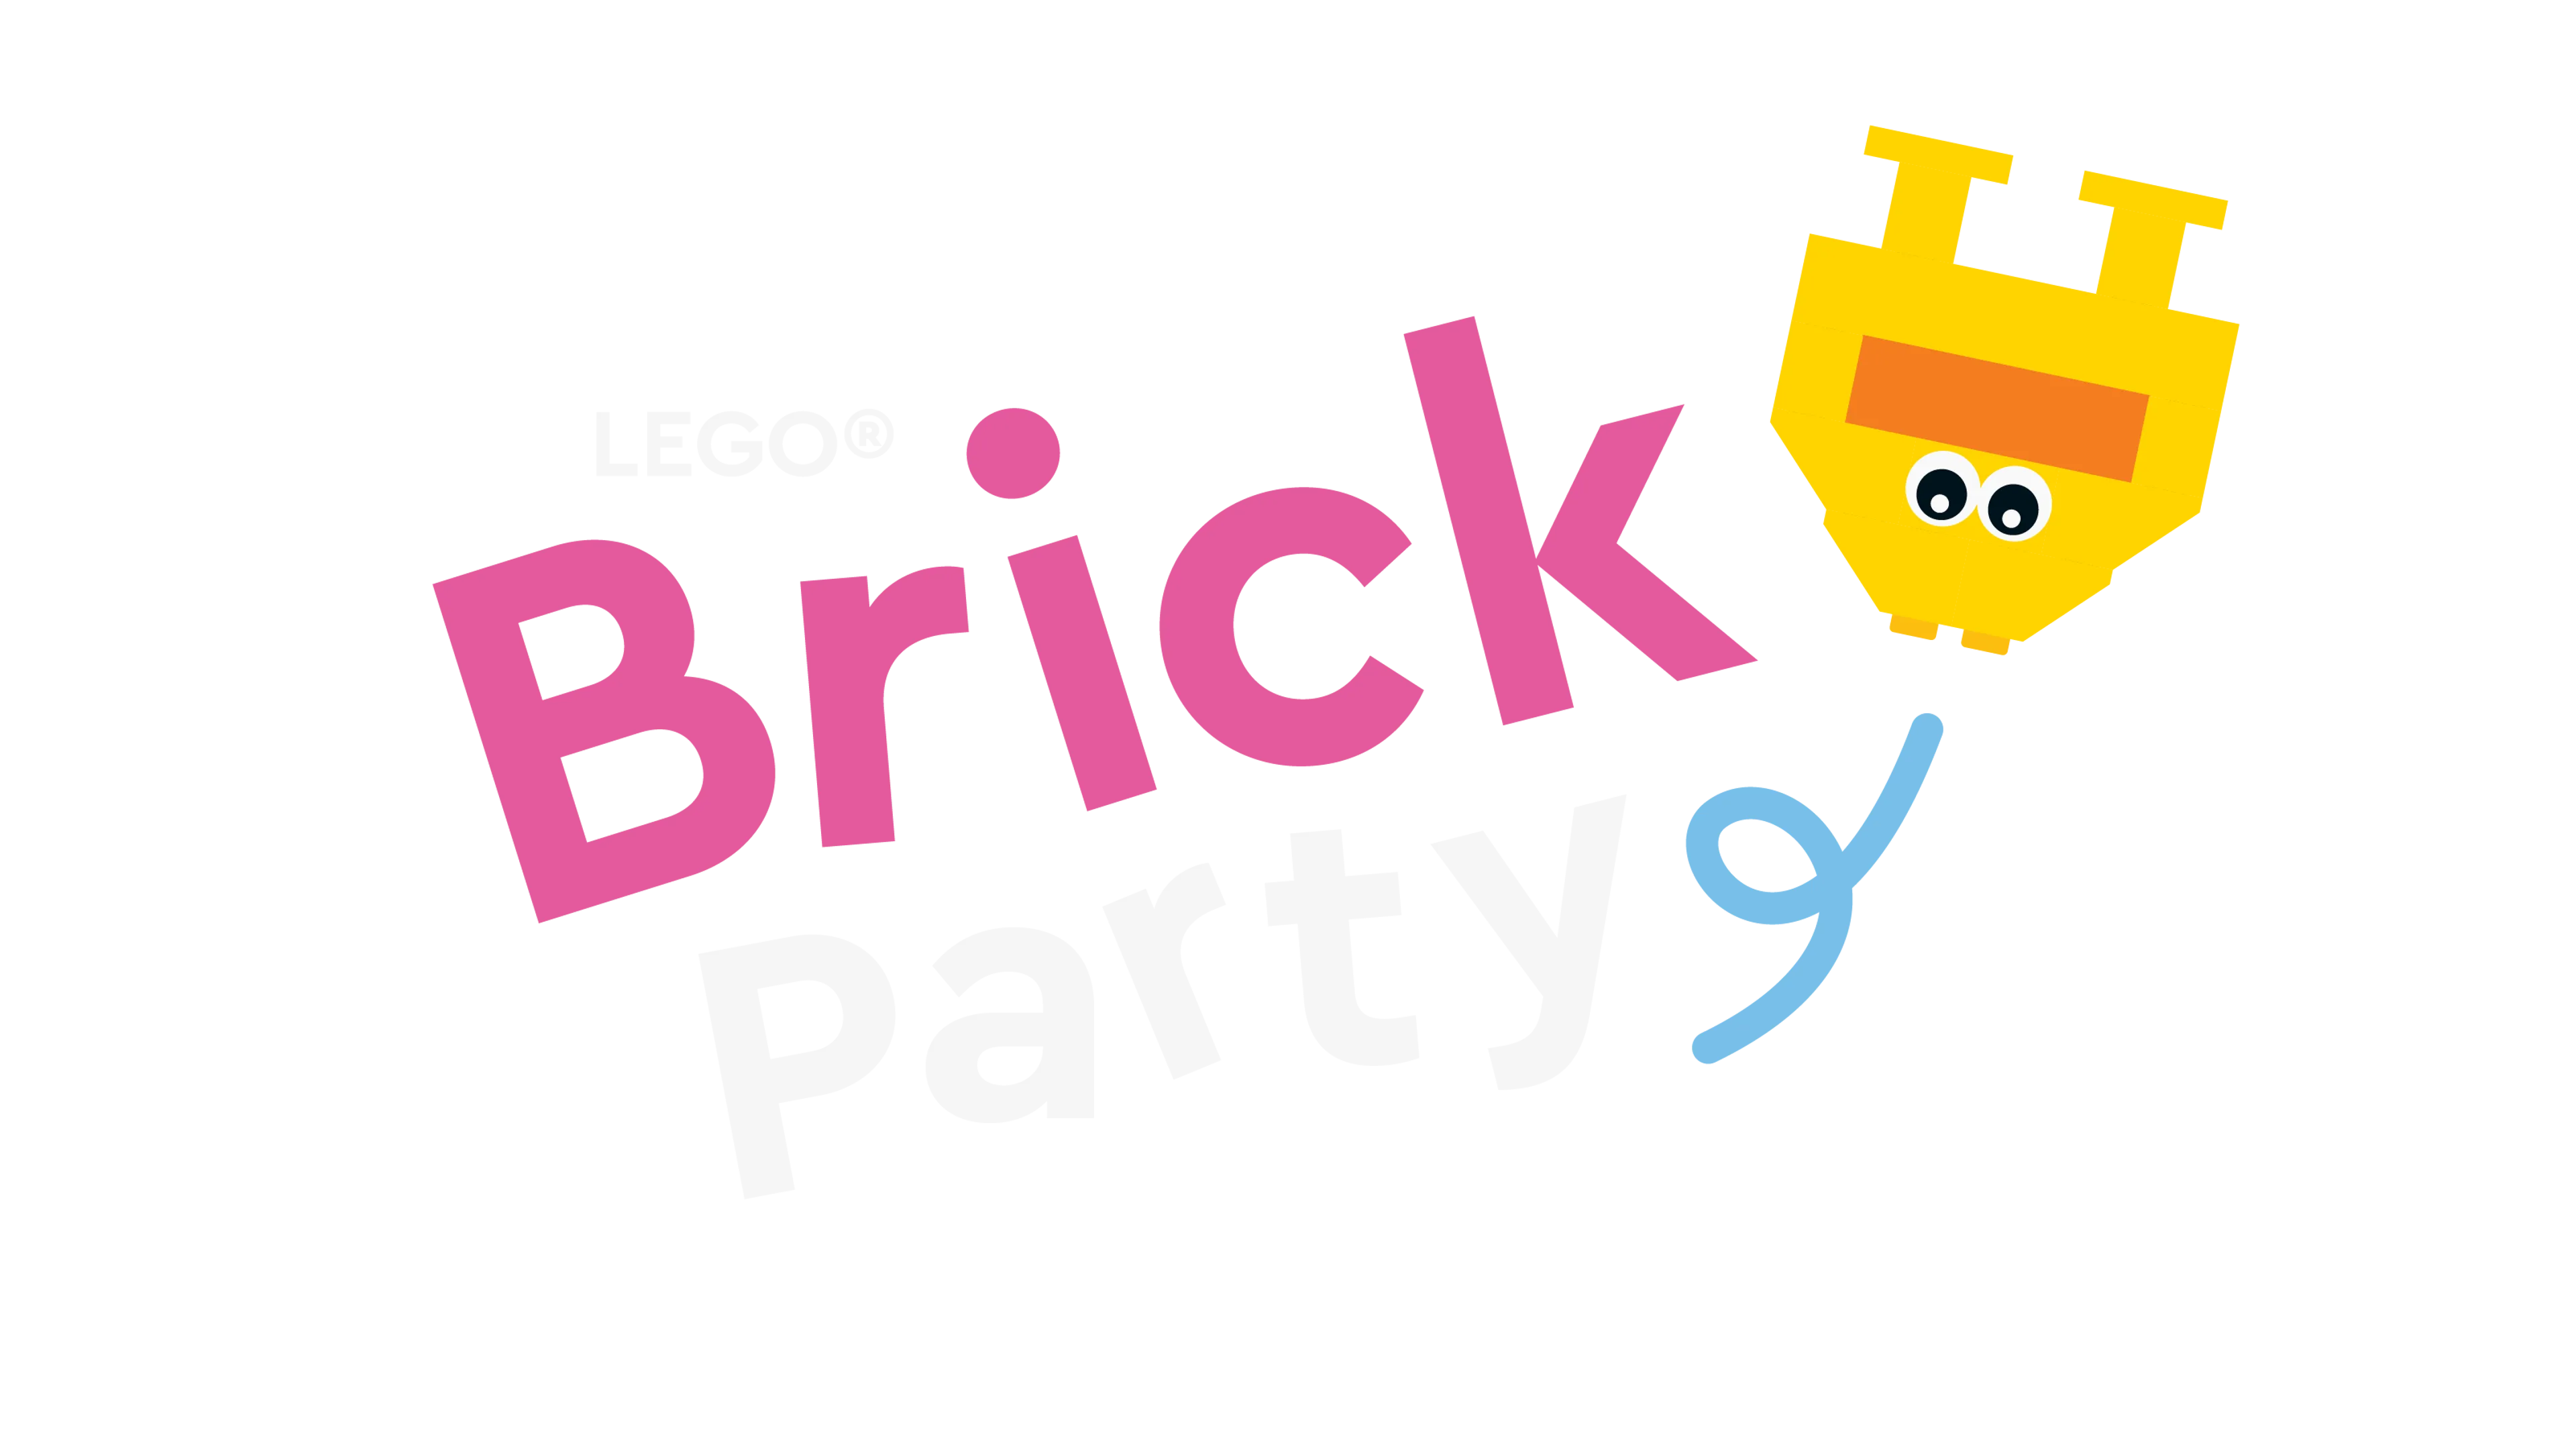 Lego Brick - Roblox Lego Png,Lego Brick Png - free transparent png